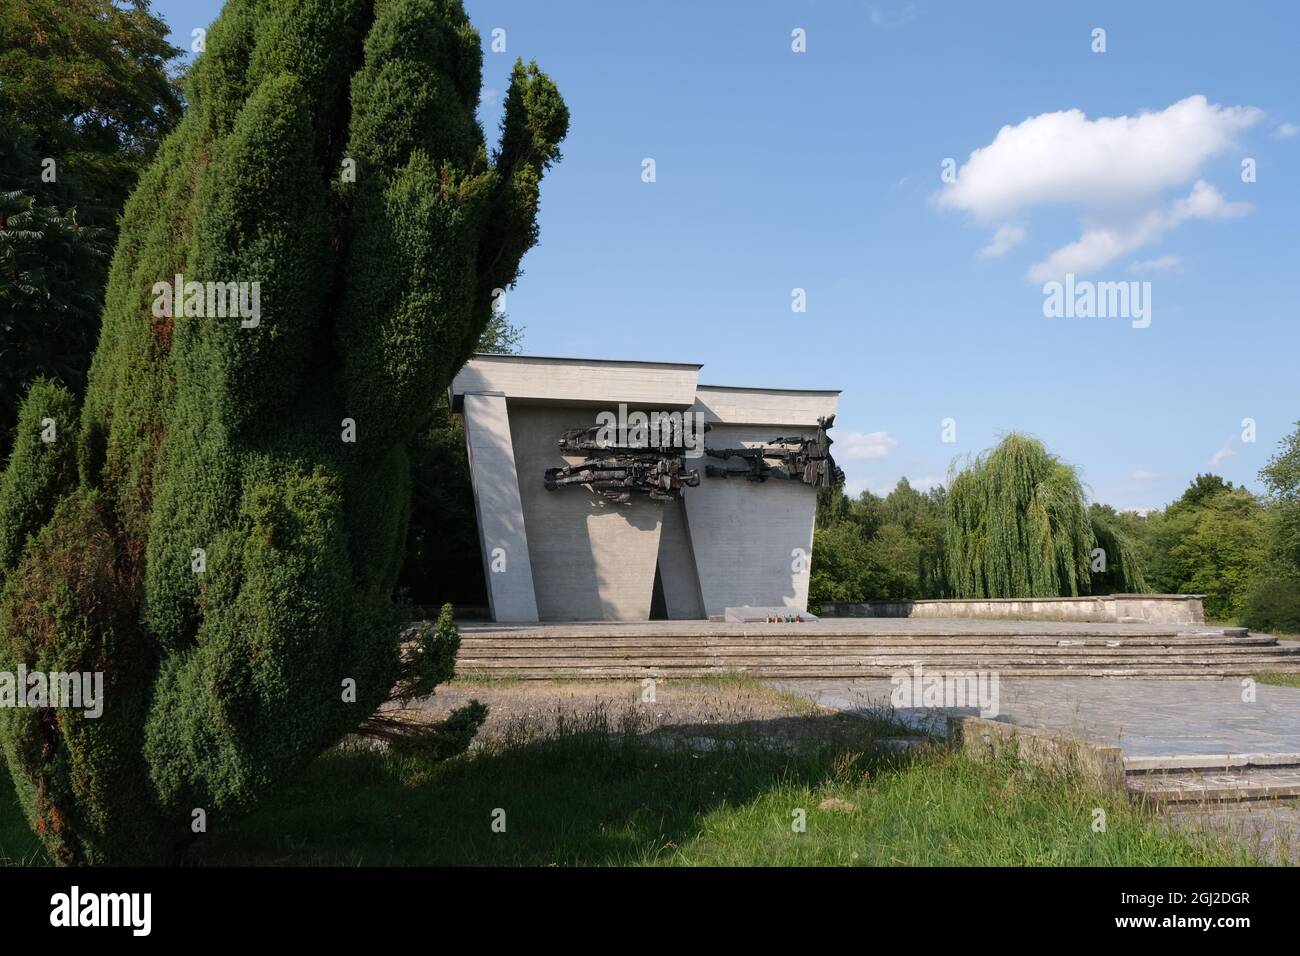 Lambinowice, Pologne - 21 août 2021 : prisonniers soviétiques de cimetière de guerre et mémorial. Environ 40.000 personnes ont péri dans le camp Stalag 318 VIII F 344 Banque D'Images